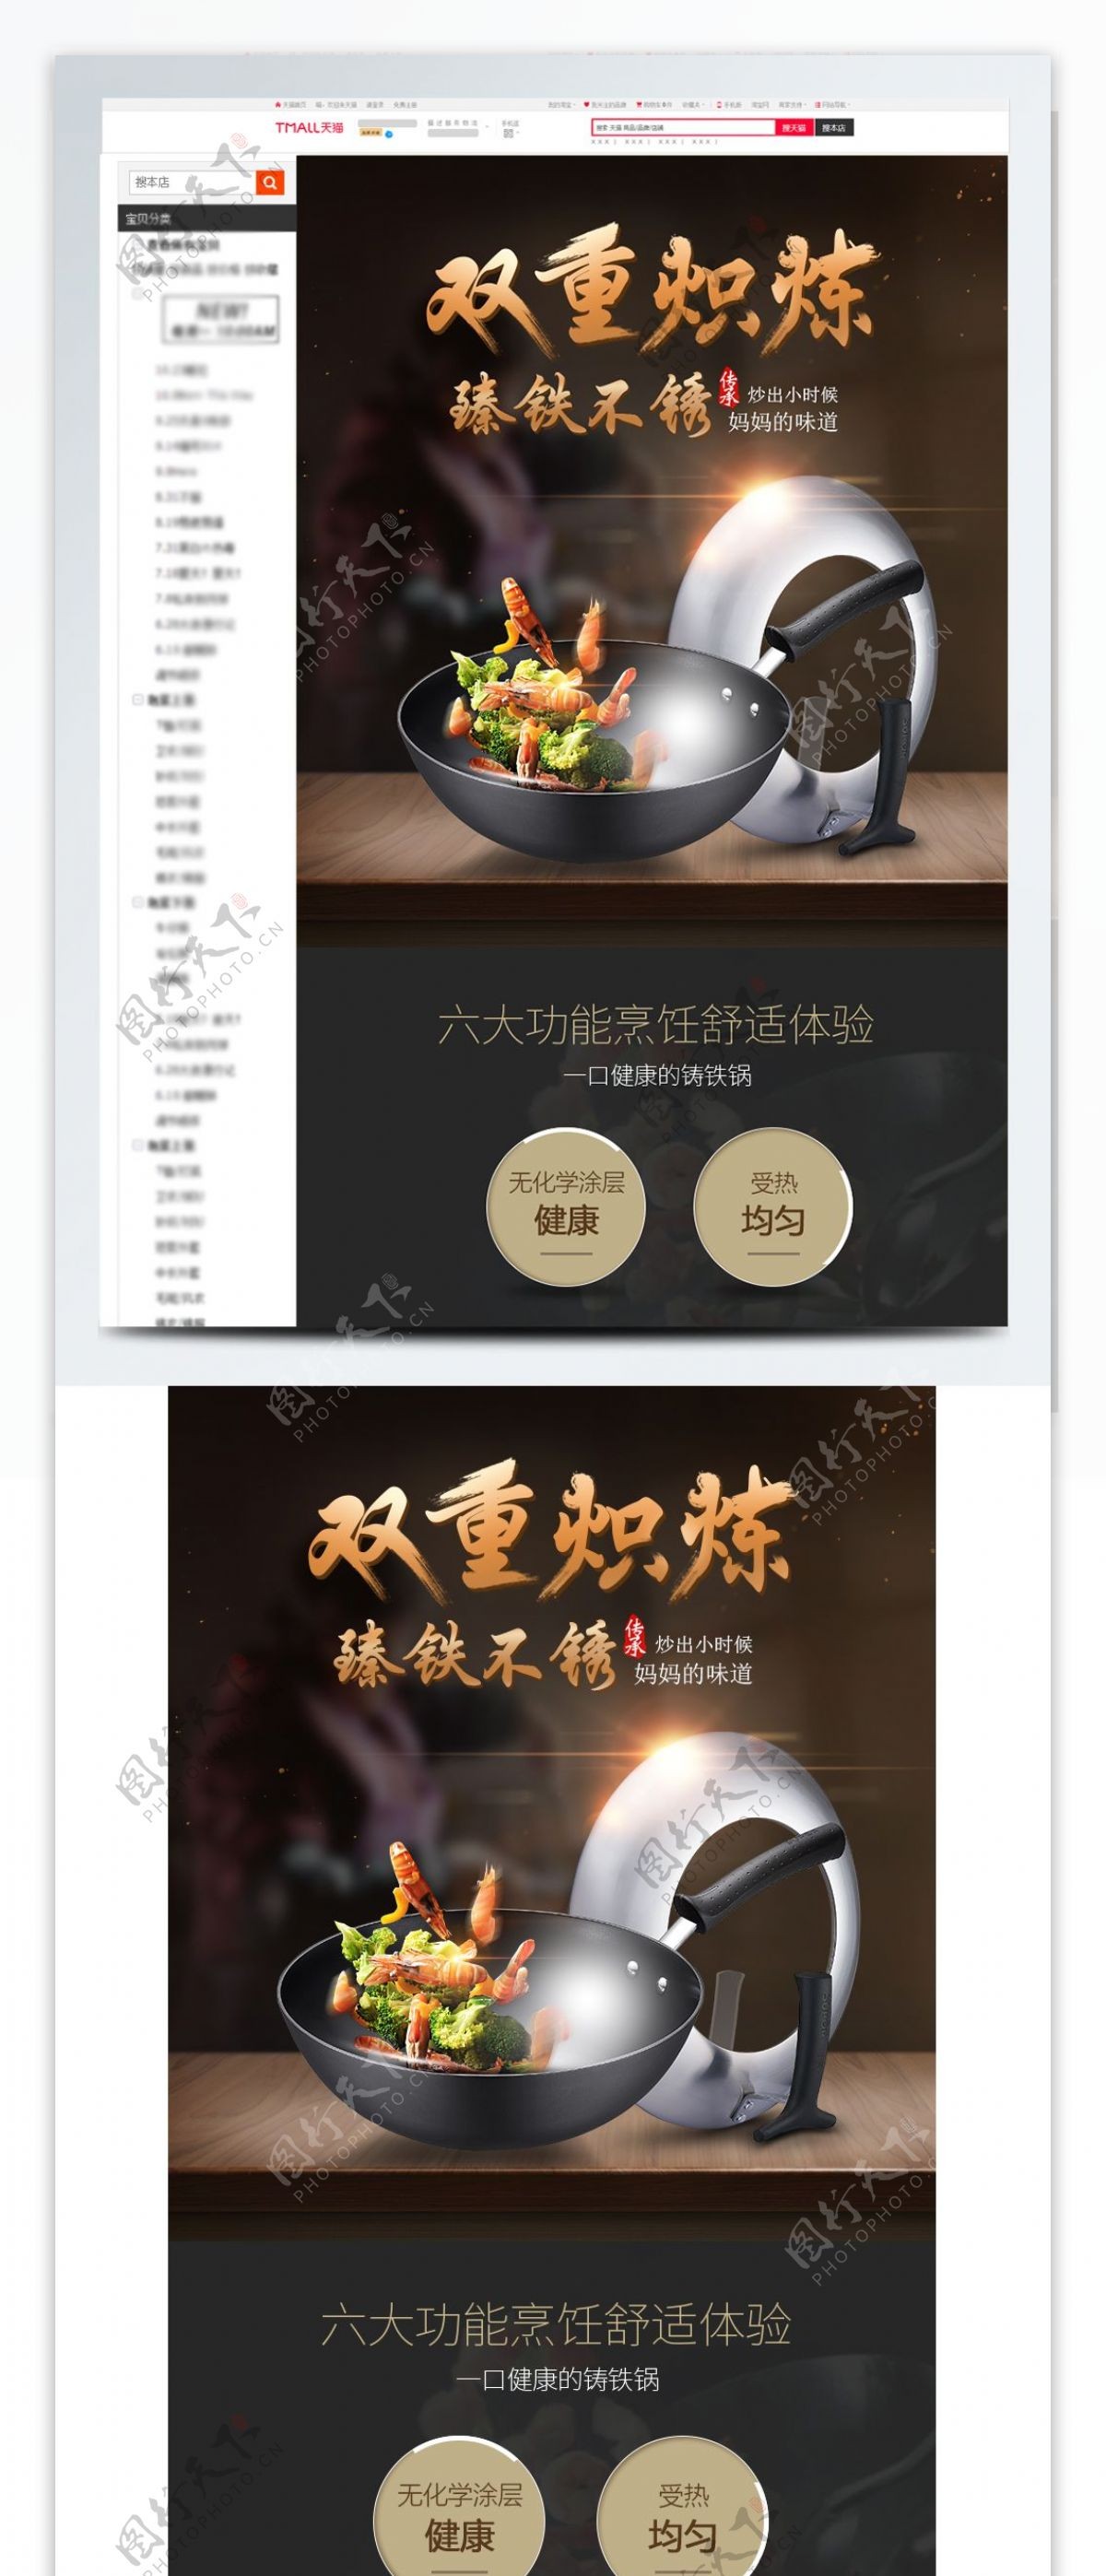 厨具炒锅详情页设计模板